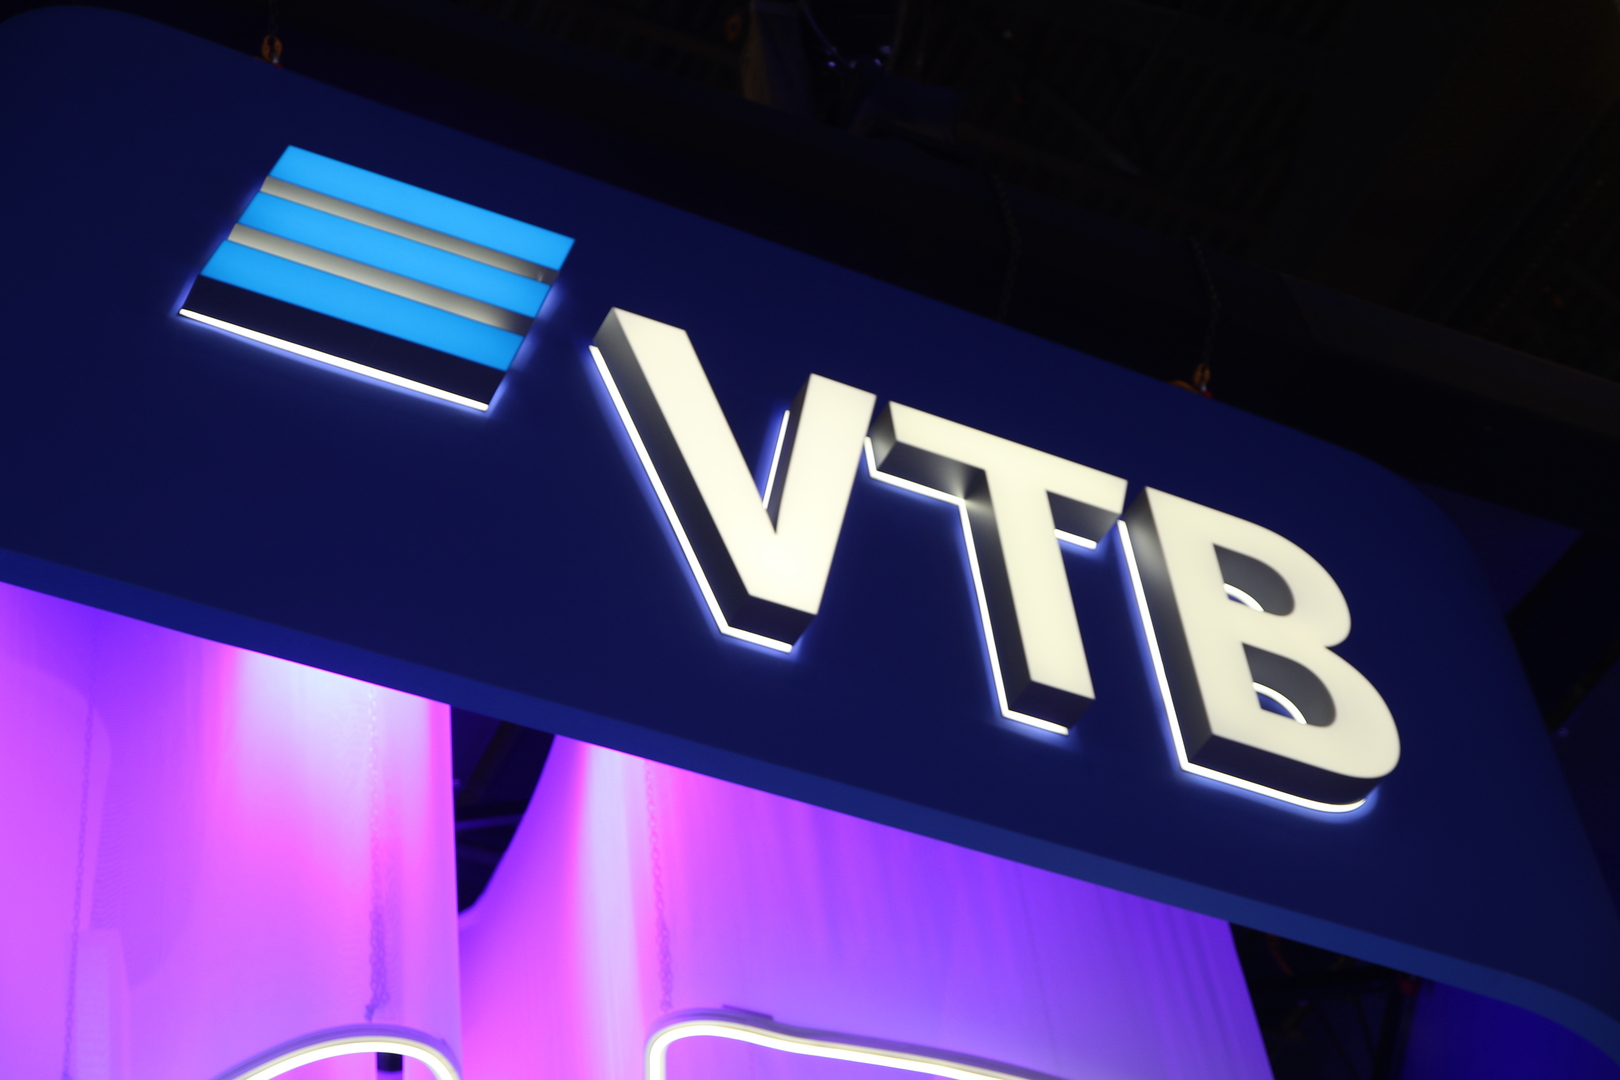 رئيس بنك VTB الروسي حول أصول البنوك الروسية المحتجزة في الاتحاد الأوروبي: ببساطة سرقت